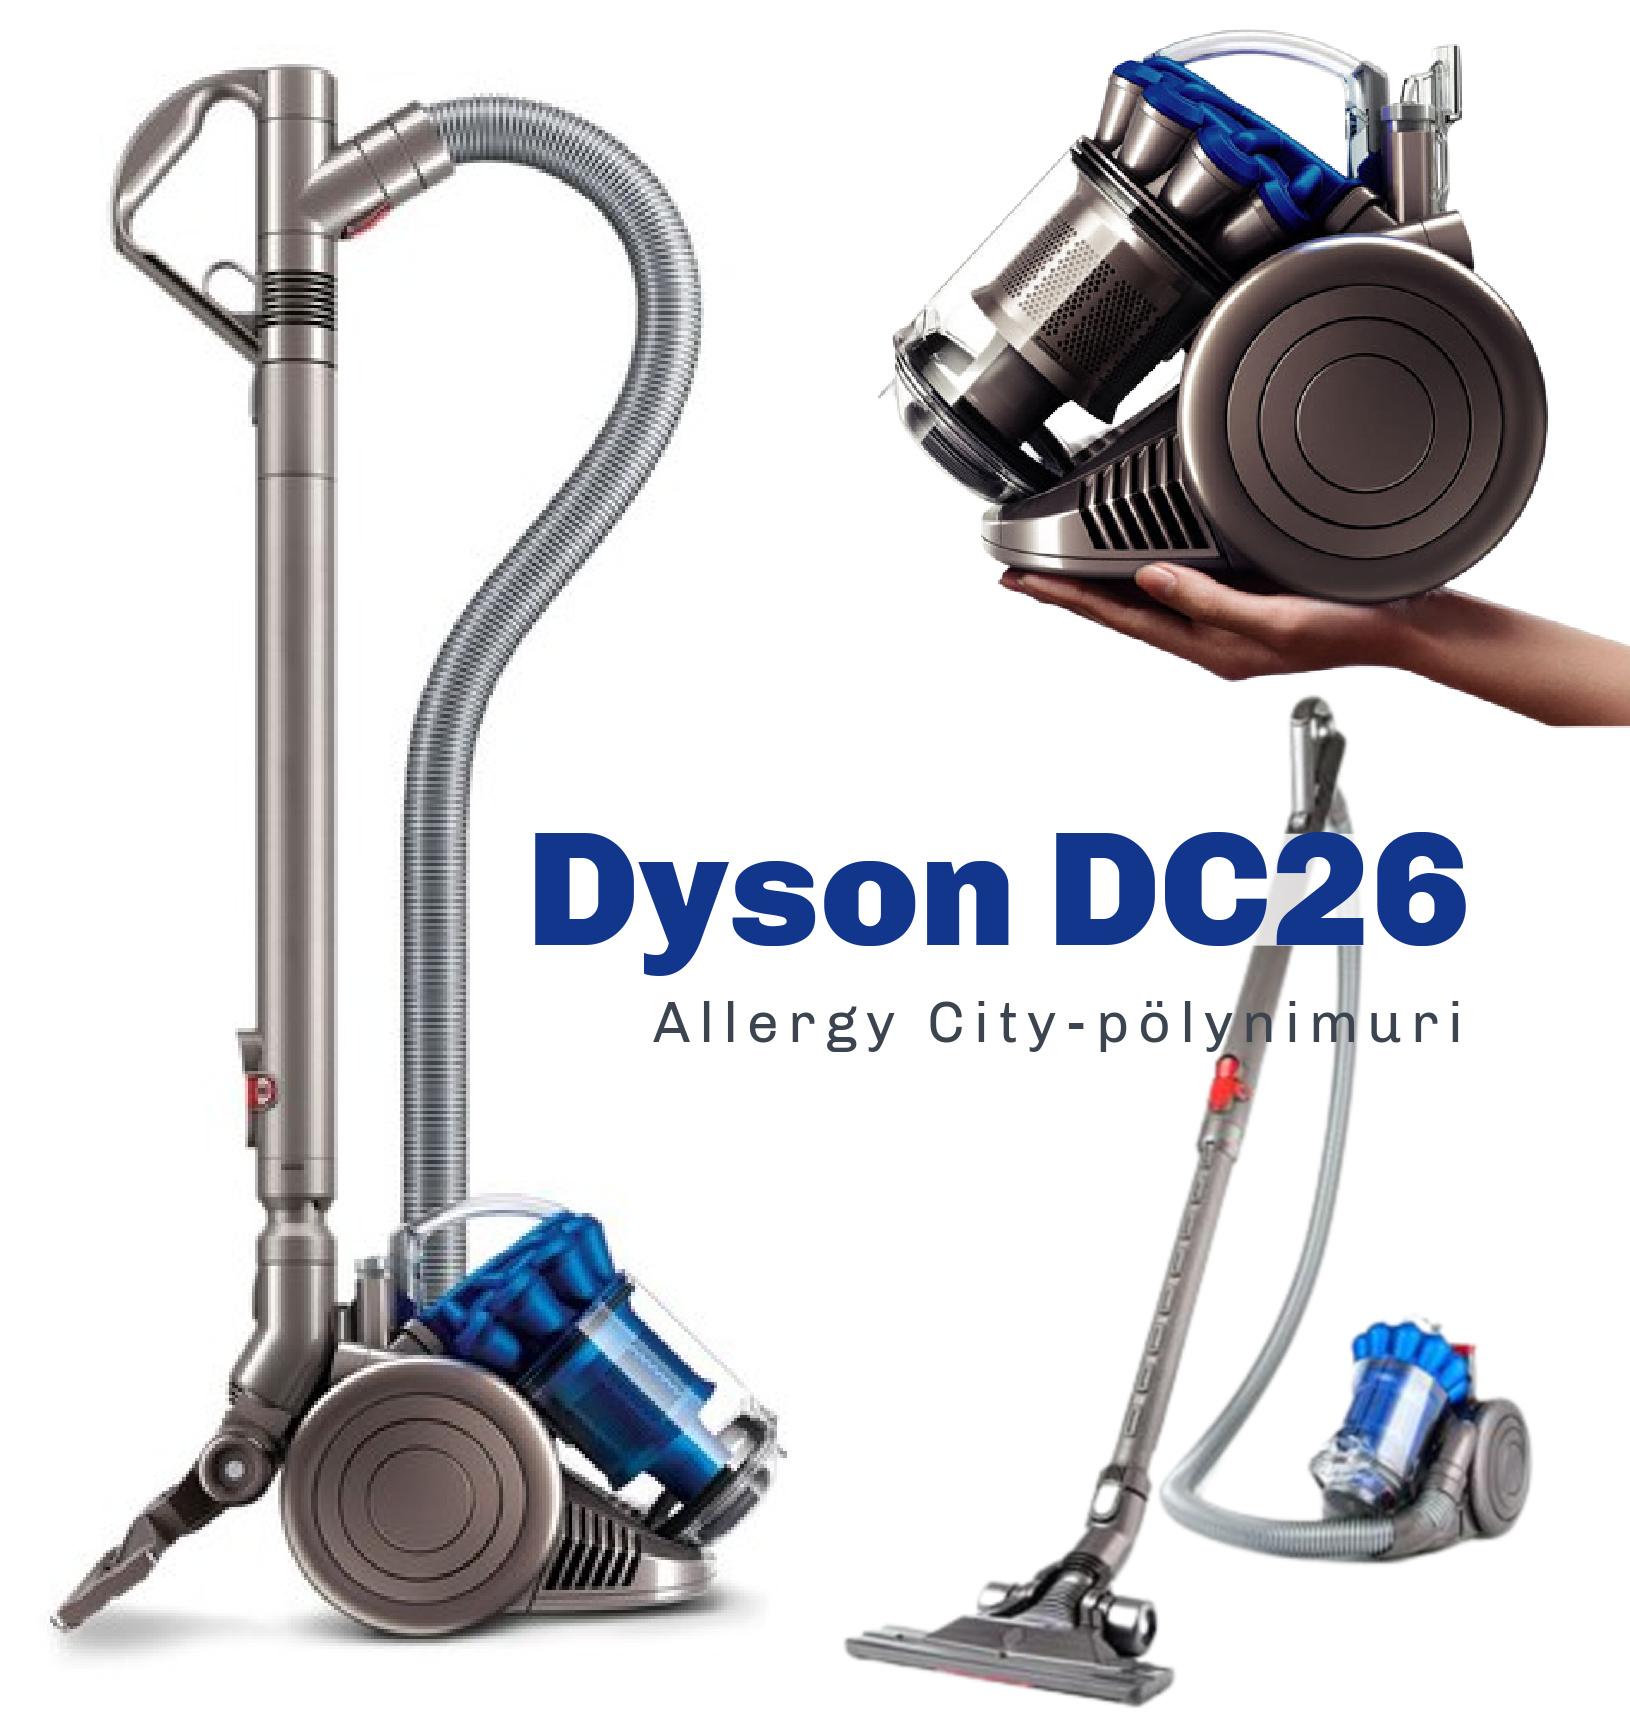 Dyson DC26 Allergy City -pölynimuri kokemuksia Omakotivalkoinen